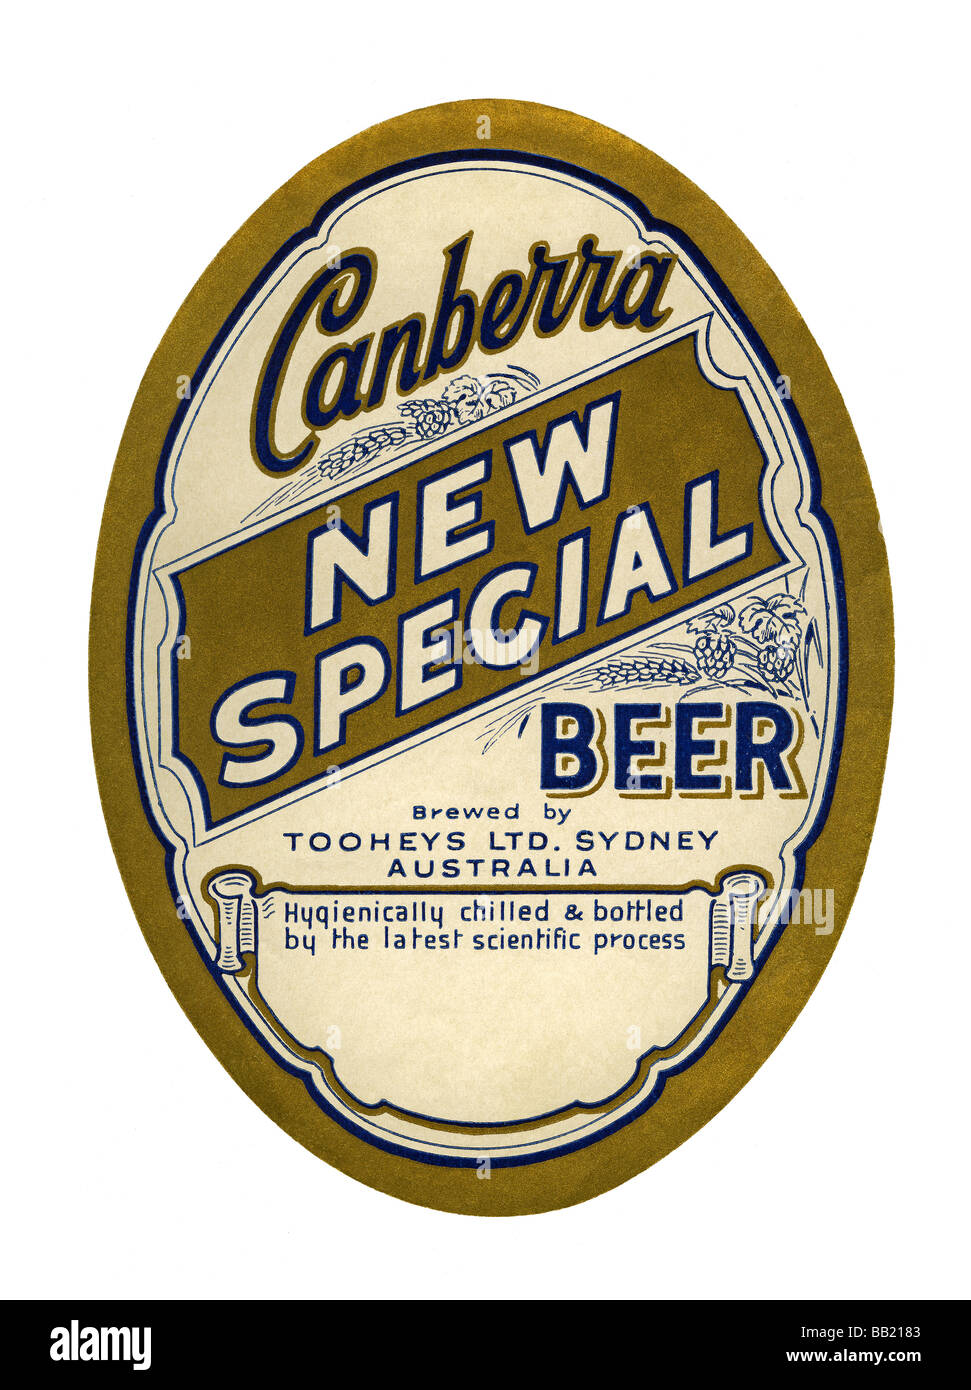 Étiquette de bière australienne de Canberra nouvelle bière spéciale brassée, Sydney, Nouvelle Galles du Sud Banque D'Images